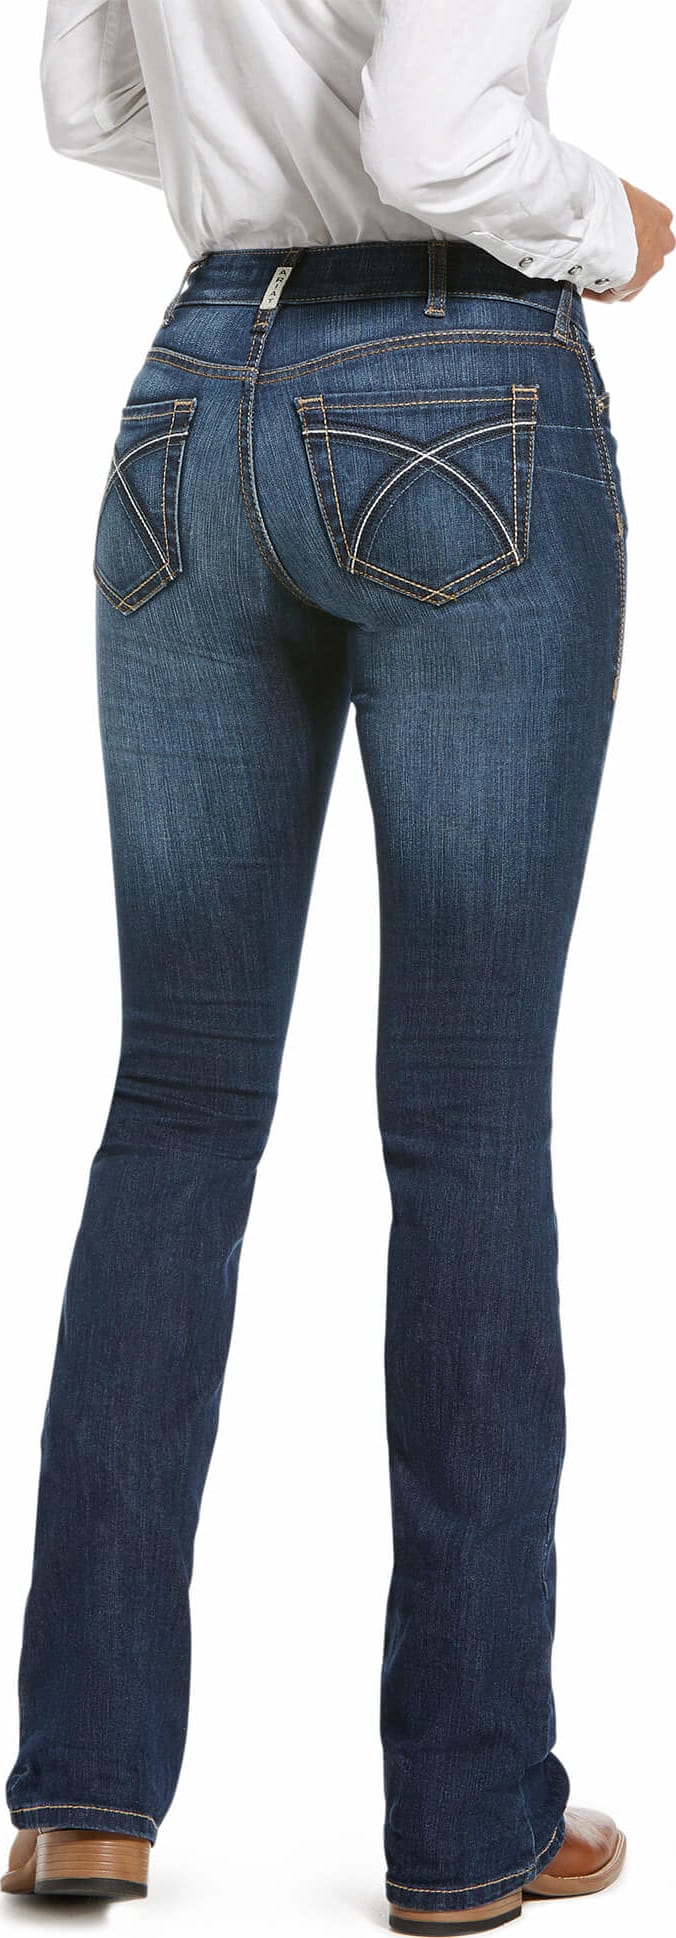 Jeans da donna Ariat REAL Perfect Rise Stretch Rosa Boot Cut in LITA - 10027713